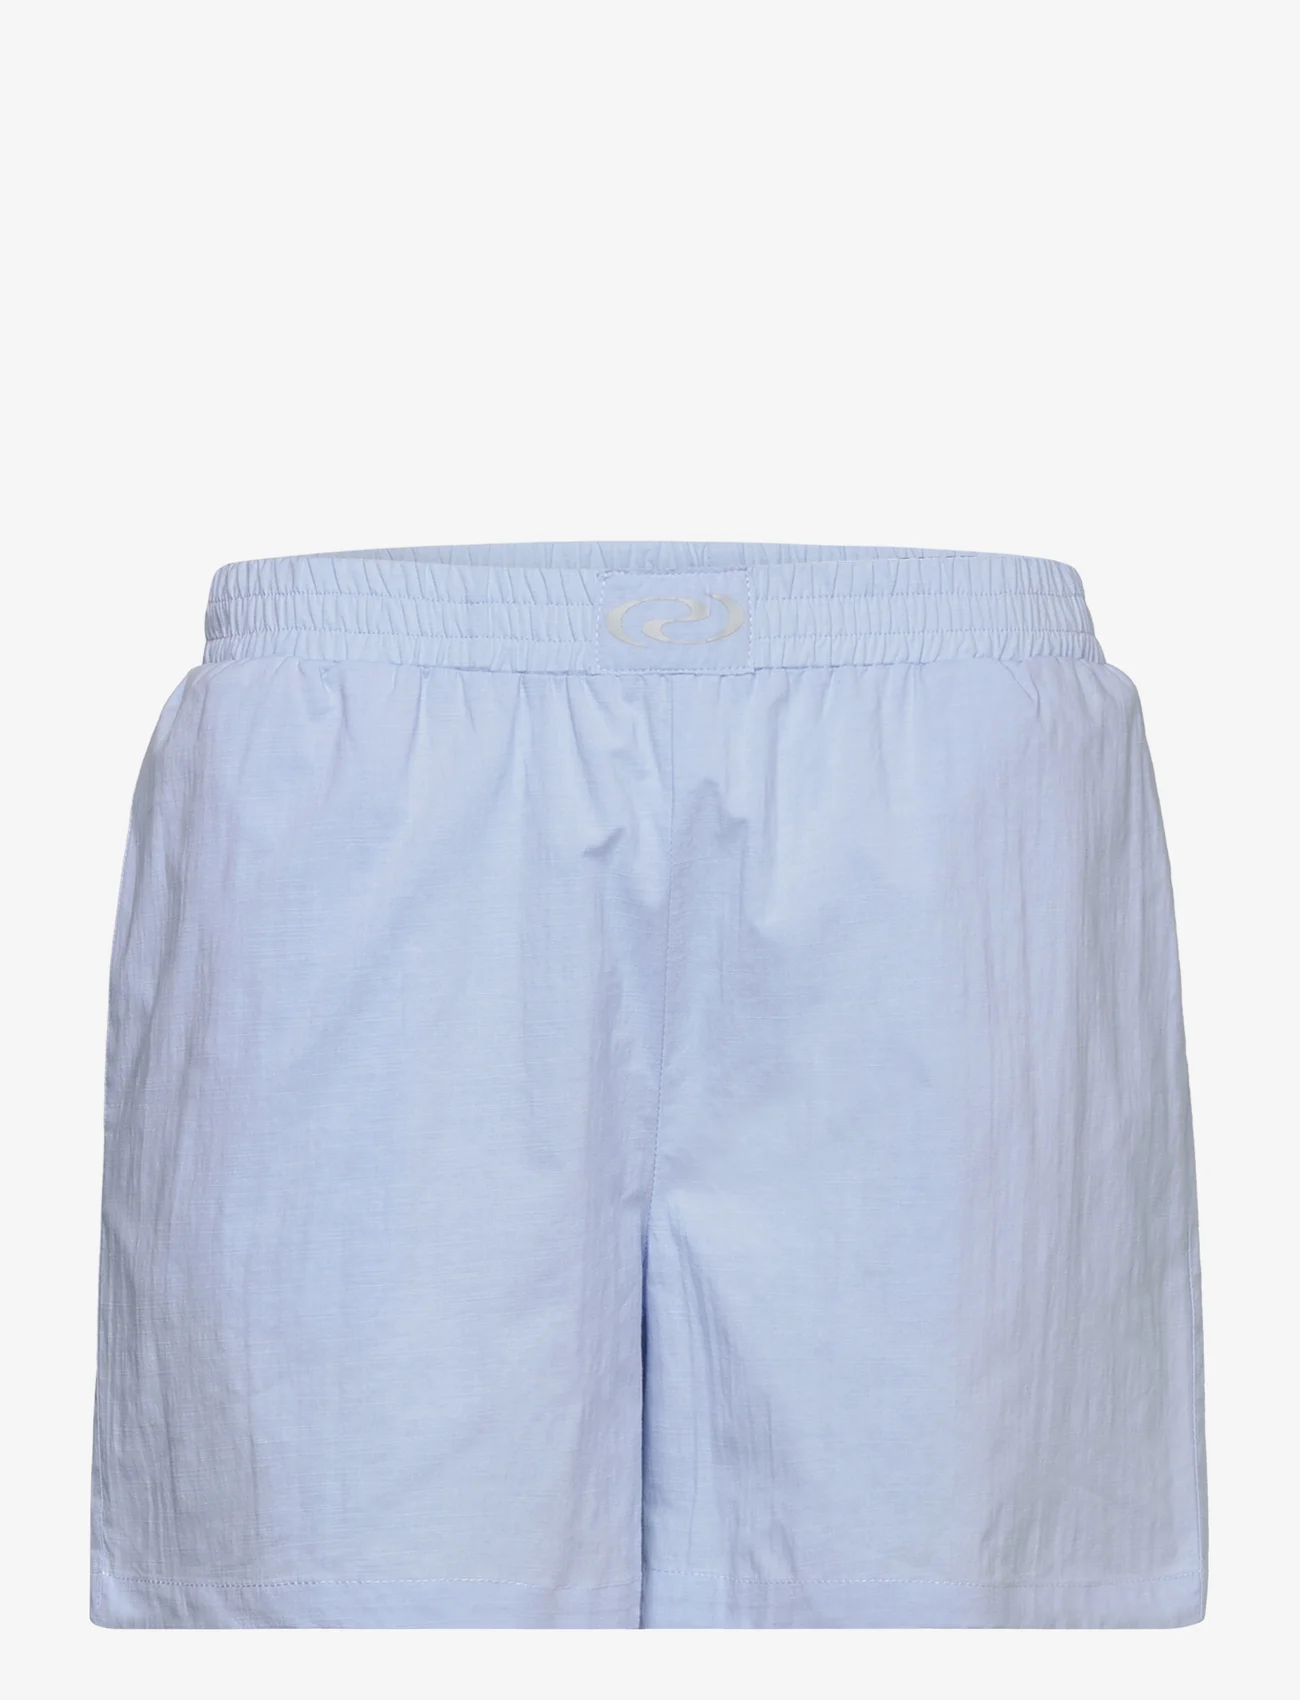 Résumé - RiveRS Shorts - lühikesed vabaajapüksid - light blue - 0